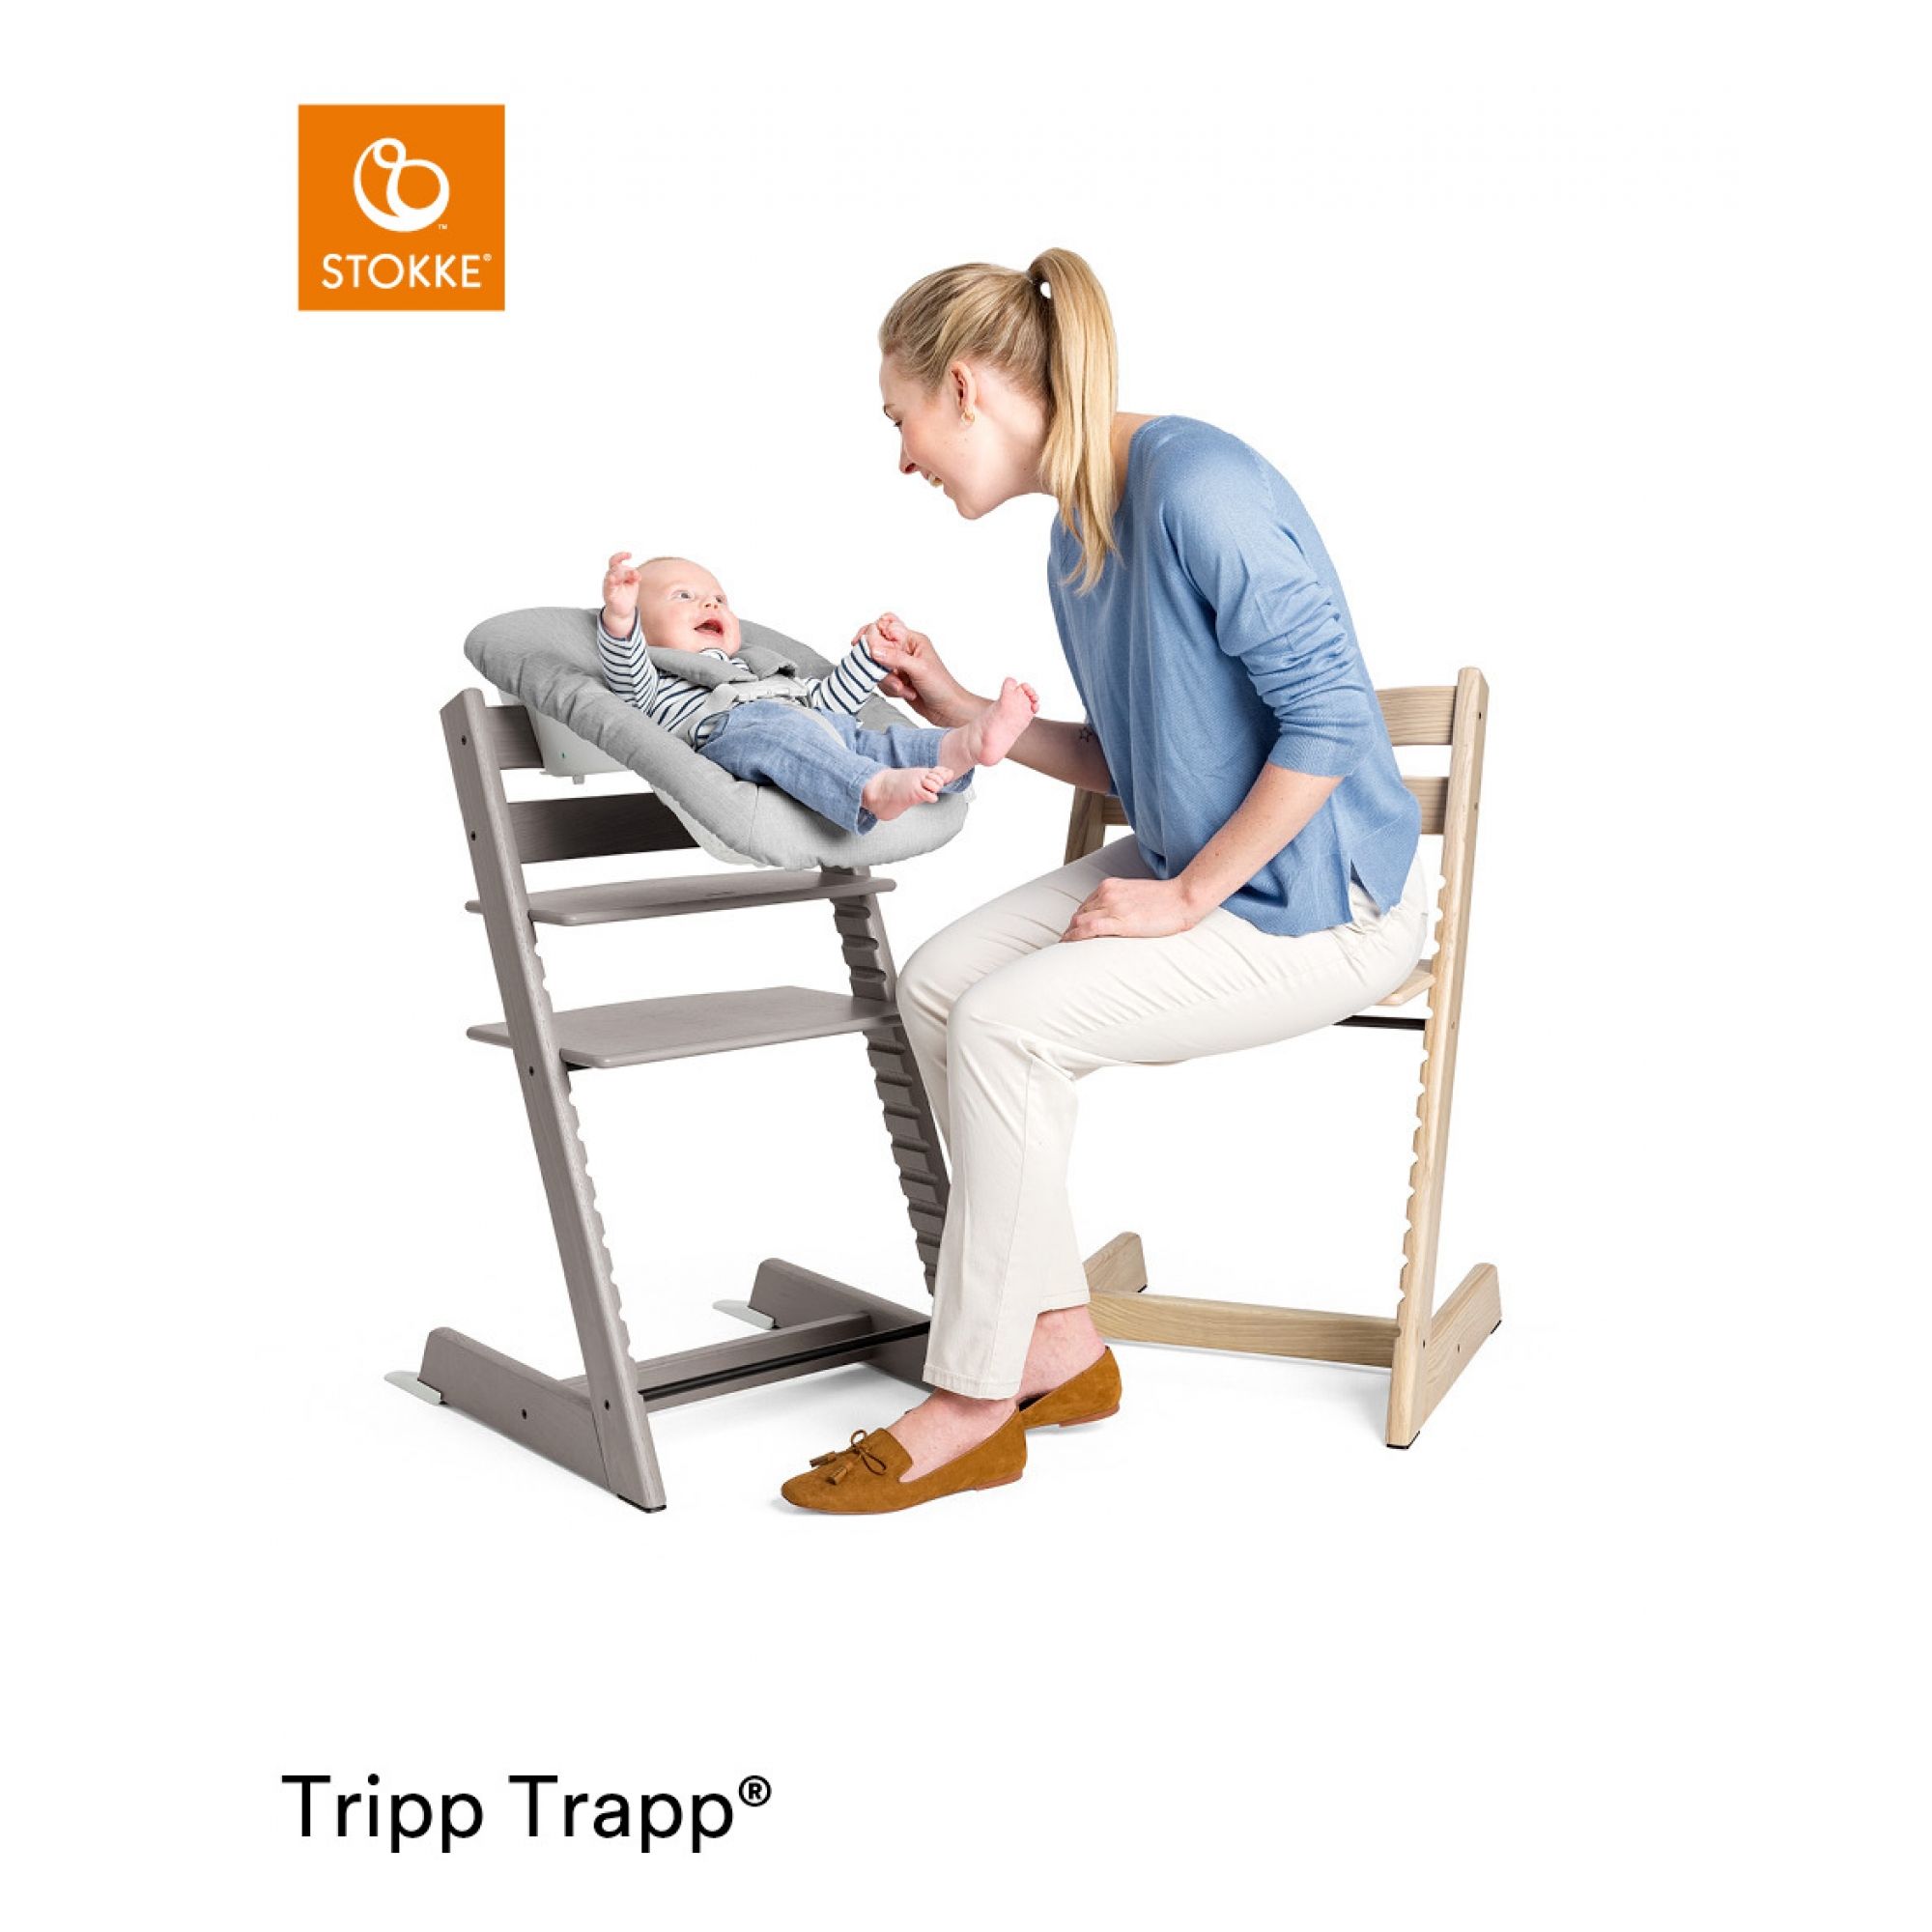 Chaise haute Tripp Trapp chêne avec baby set et plateau Stokke